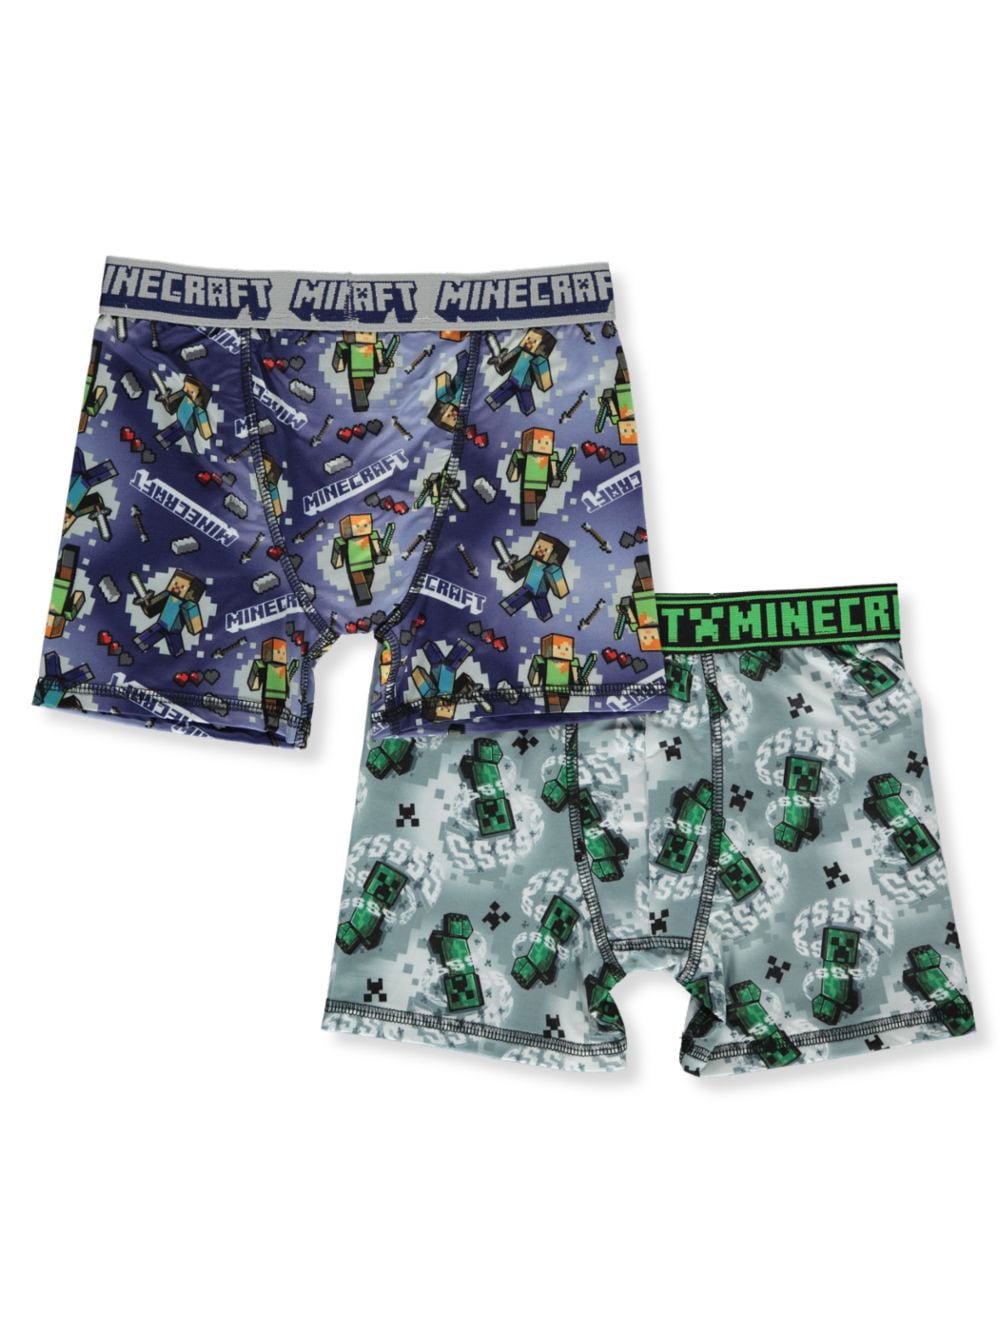 Minecraft Boys TNT Underwear 2PK Boxer Shorts Underwear Set 